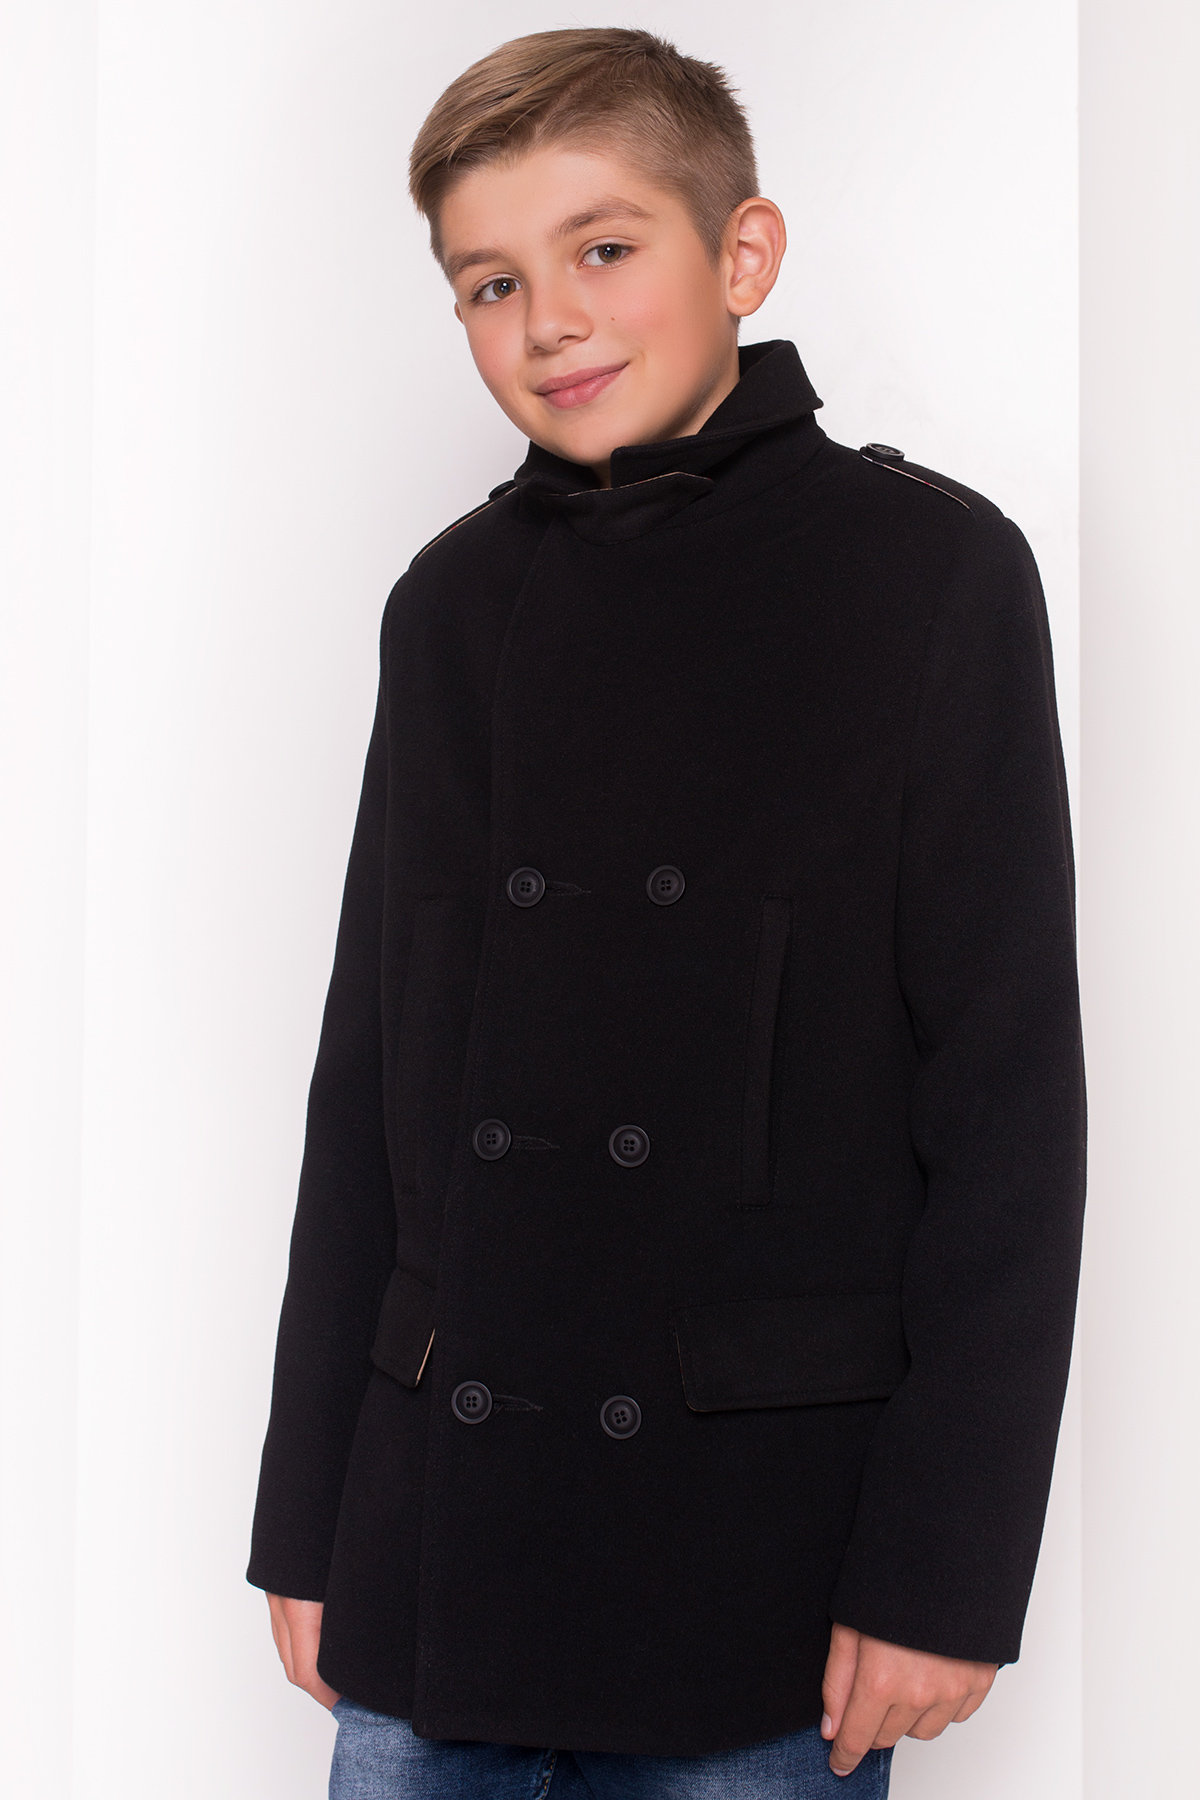 Пальто детское Никас 5309 АРТ. 36532 Цвет: Черный - фото 4, интернет магазин tm-modus.ru